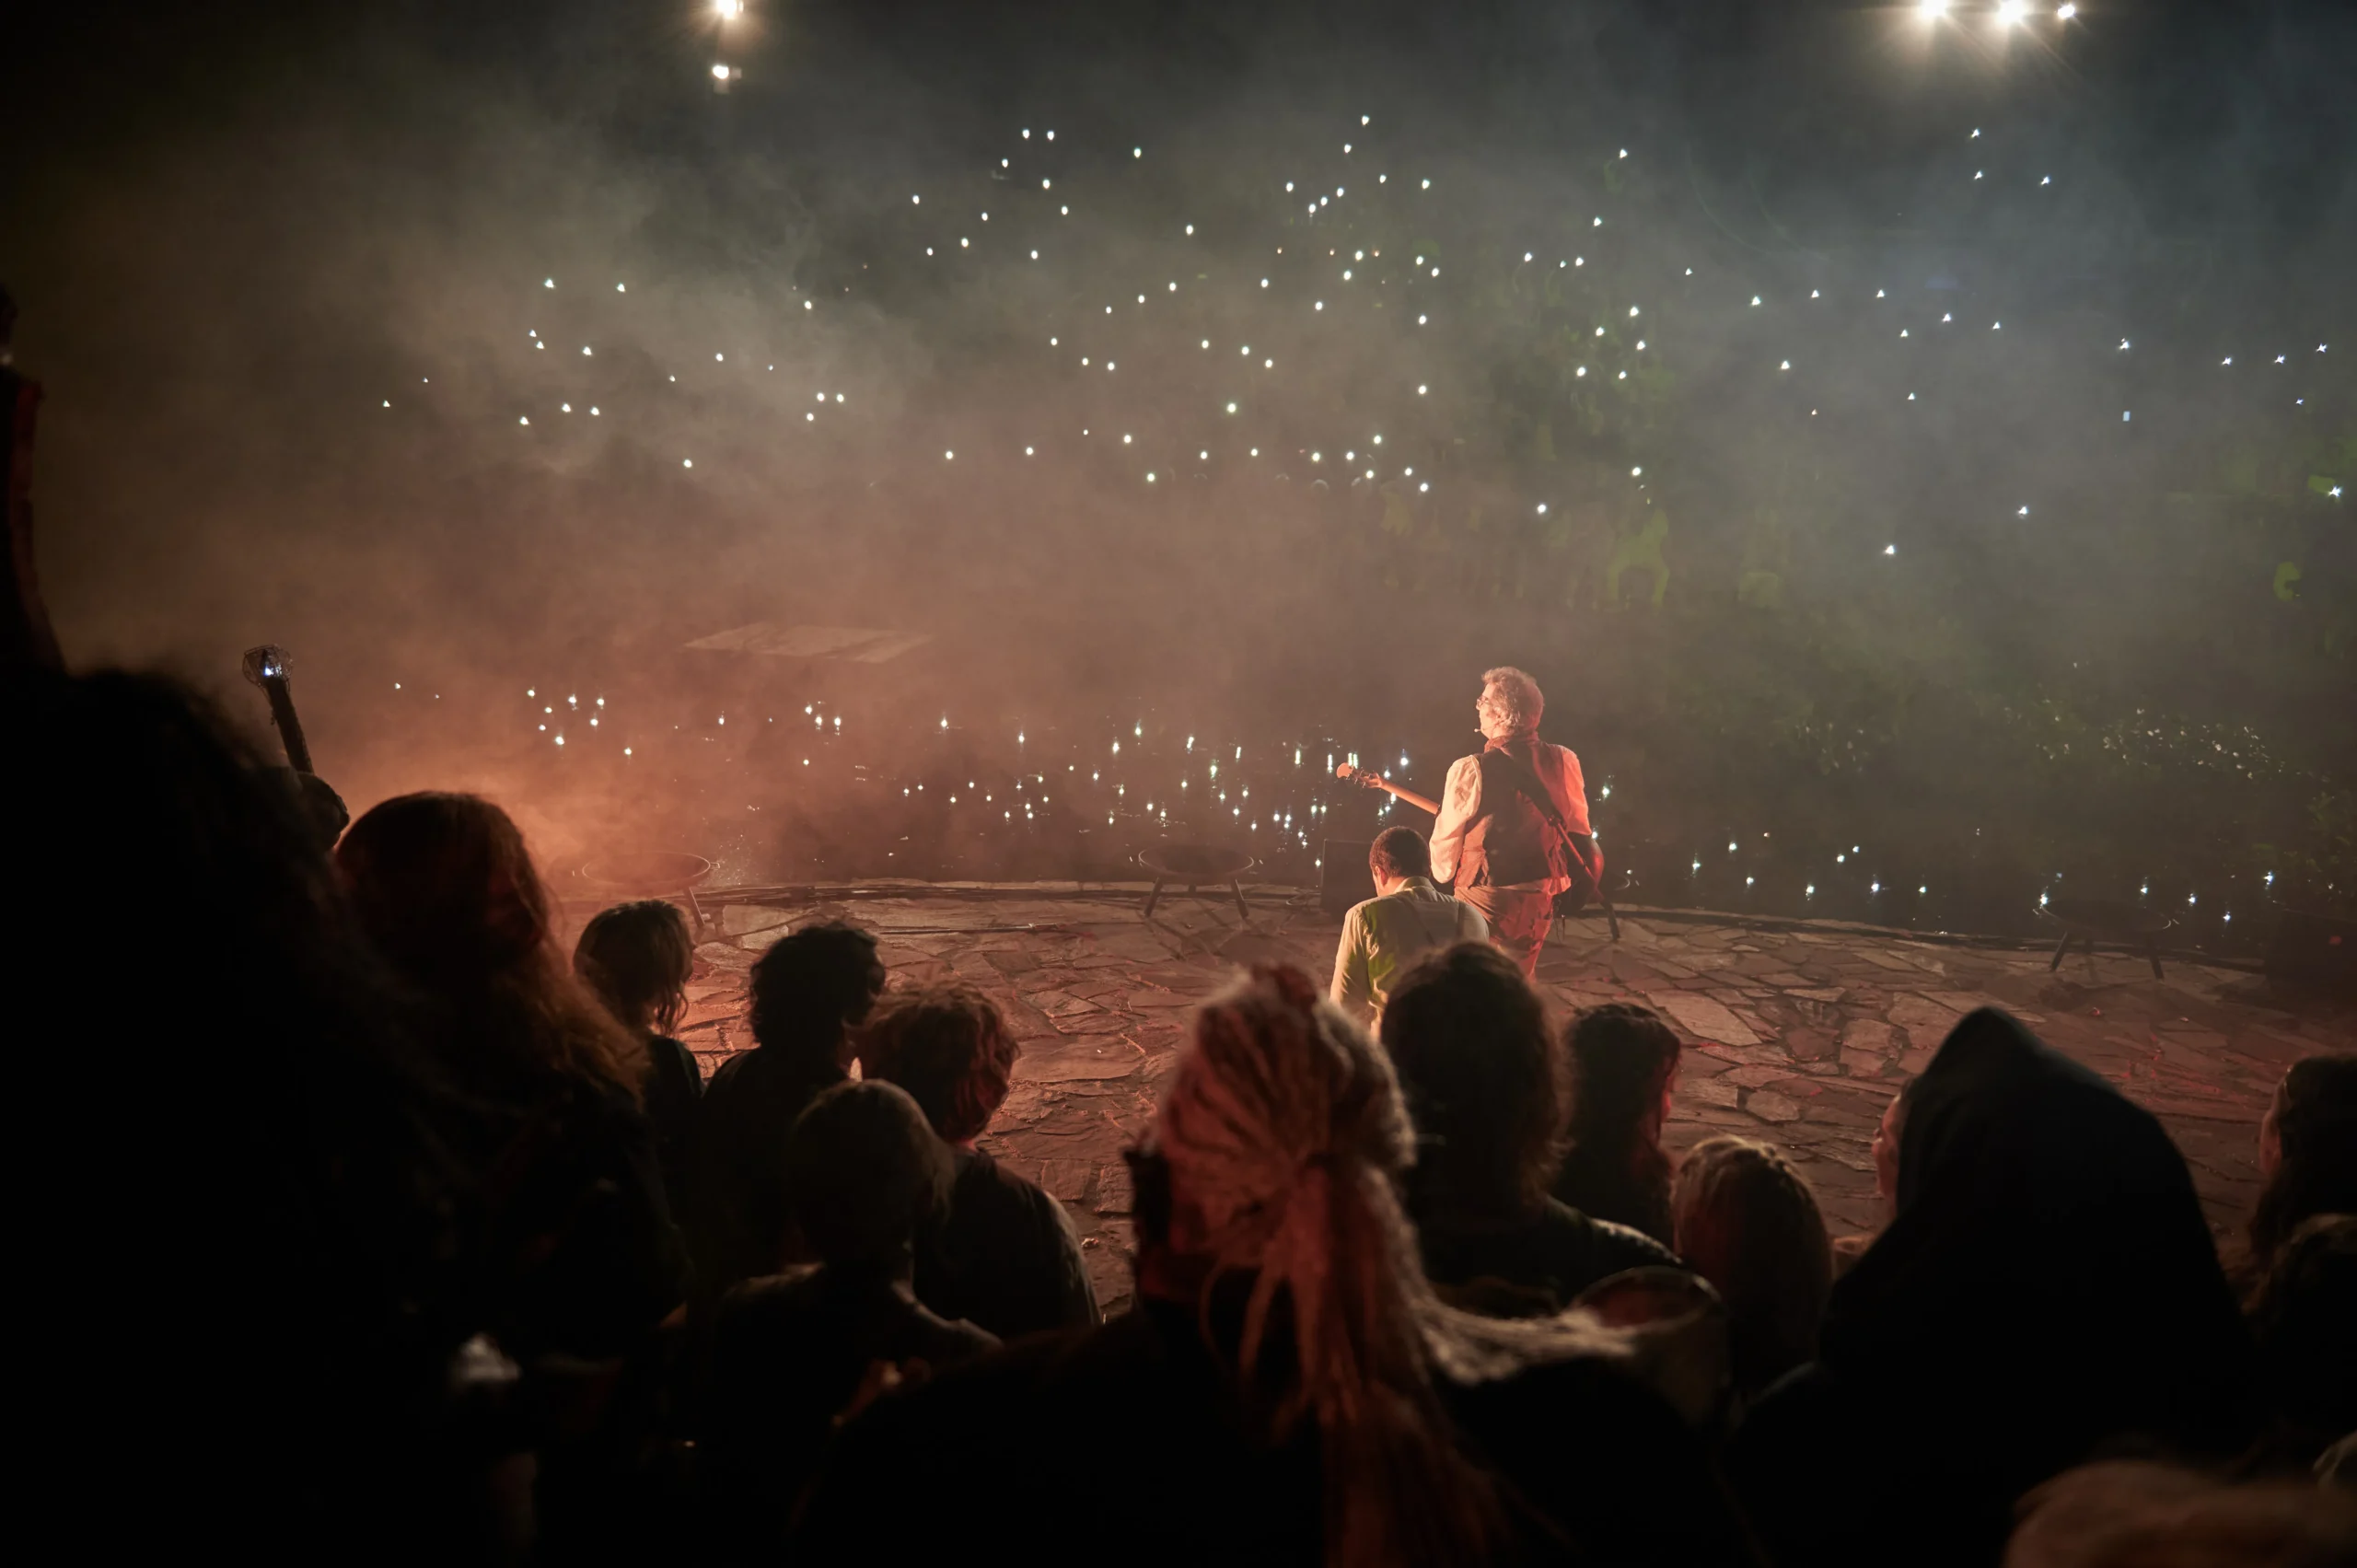 Bilbo Beutlin steht auf der Bühne, mit Blick in Richtung des Publikums im Hintergrund. Das Publikum hat die Handy-Taschenlampen eingeschaltet und man sieht ein Lichtermeer.